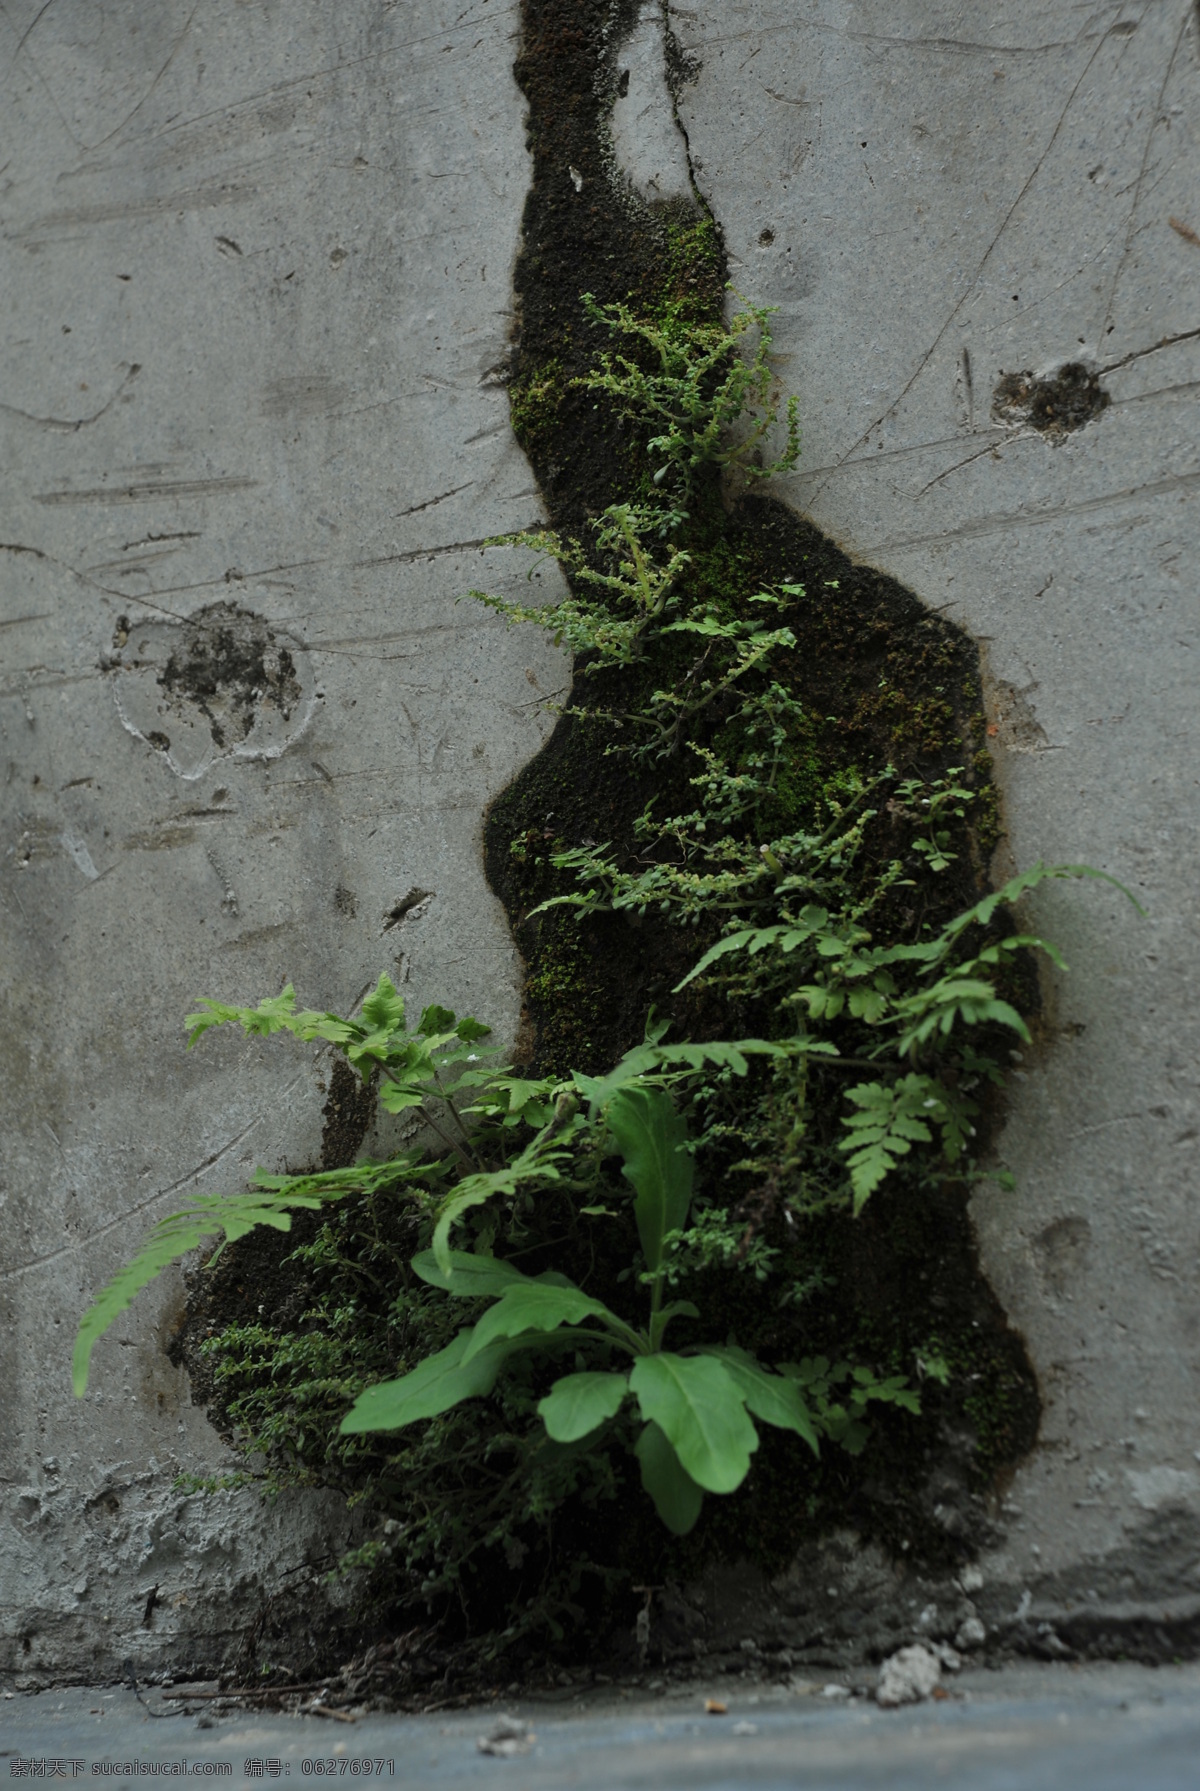 青苔 苔藓 植物青苔 青苔图片 绿色苔藓 苔藓植物 花草 生物世界 黑色